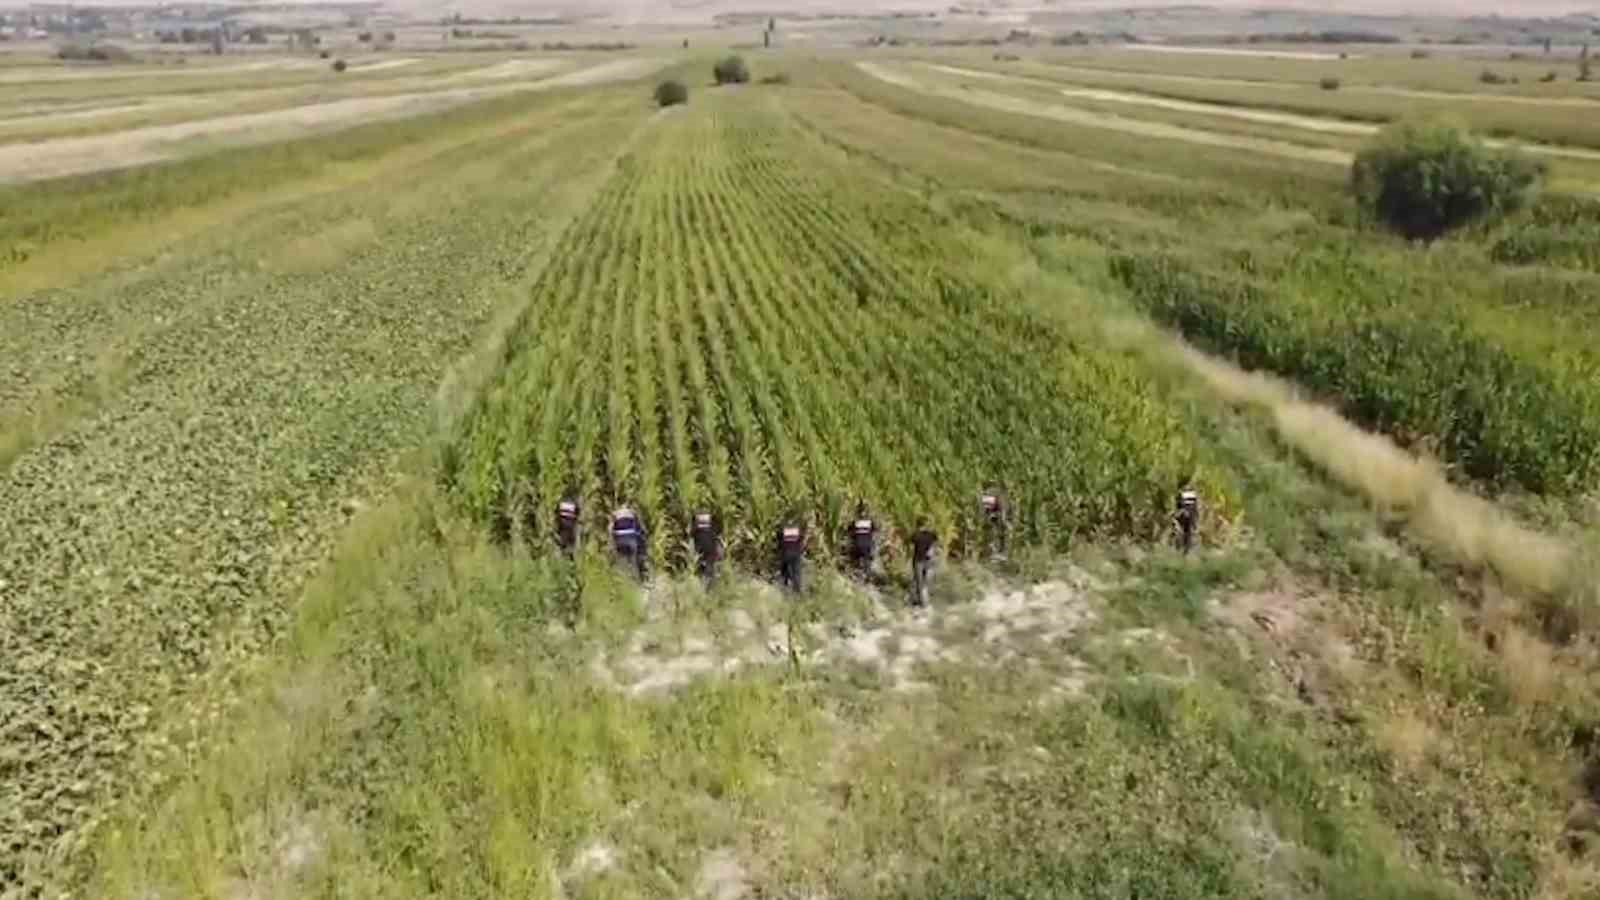 Jandarmadan mısır tarlasına "Dron" destekli uyuşturucu operasyonu: 2 gözaltı